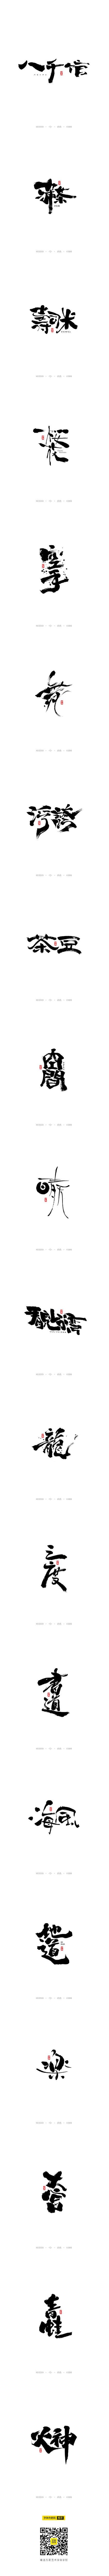 十月日式和风手写字体-字体传奇网-中国首...